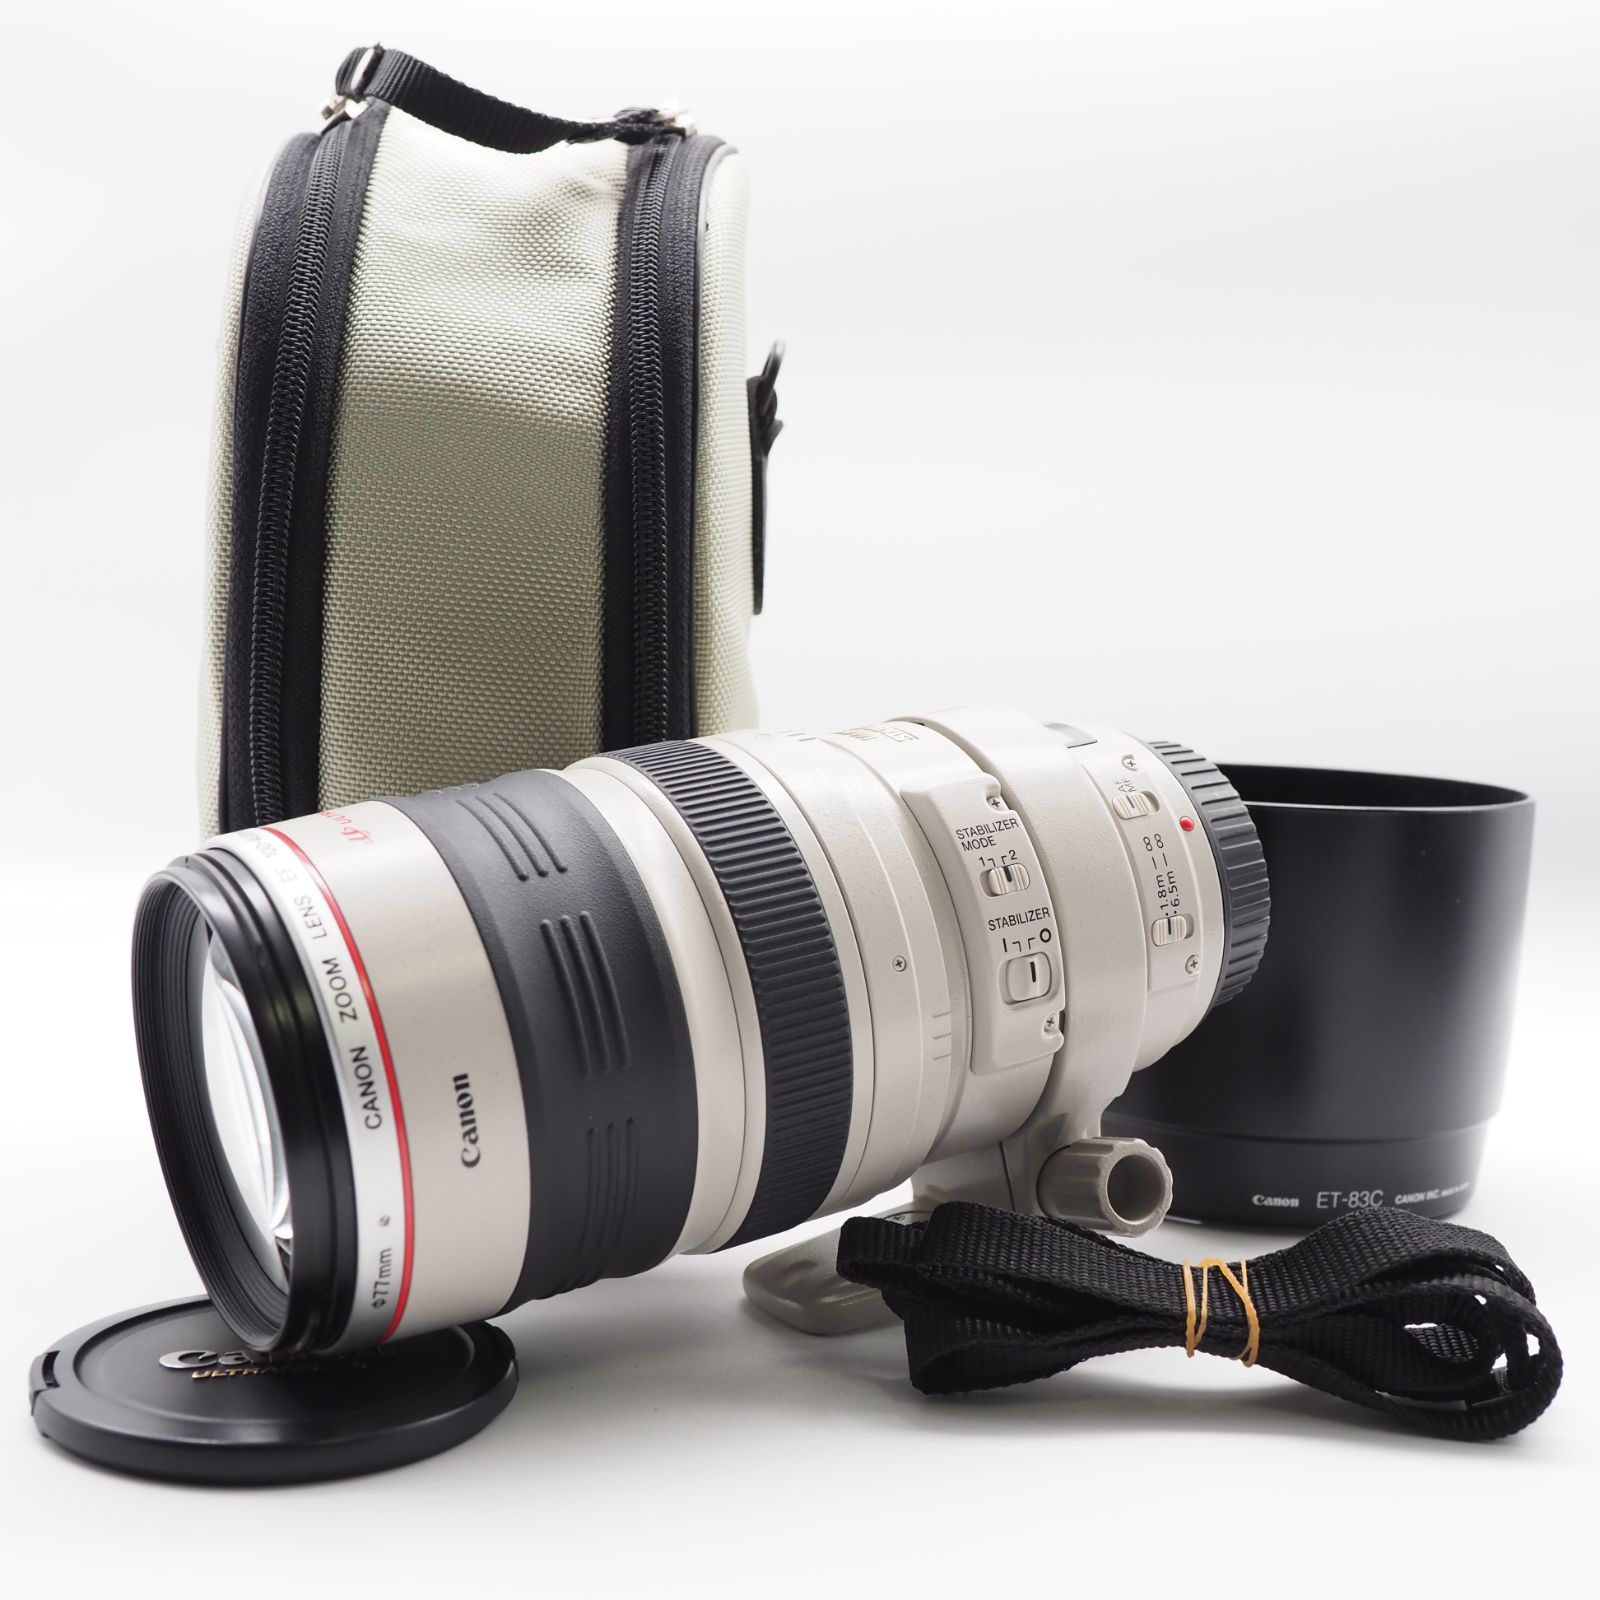 Canon 望遠ズームレンズ EF100-400mm F4.5-5.6L IS USM フルサイズ対応